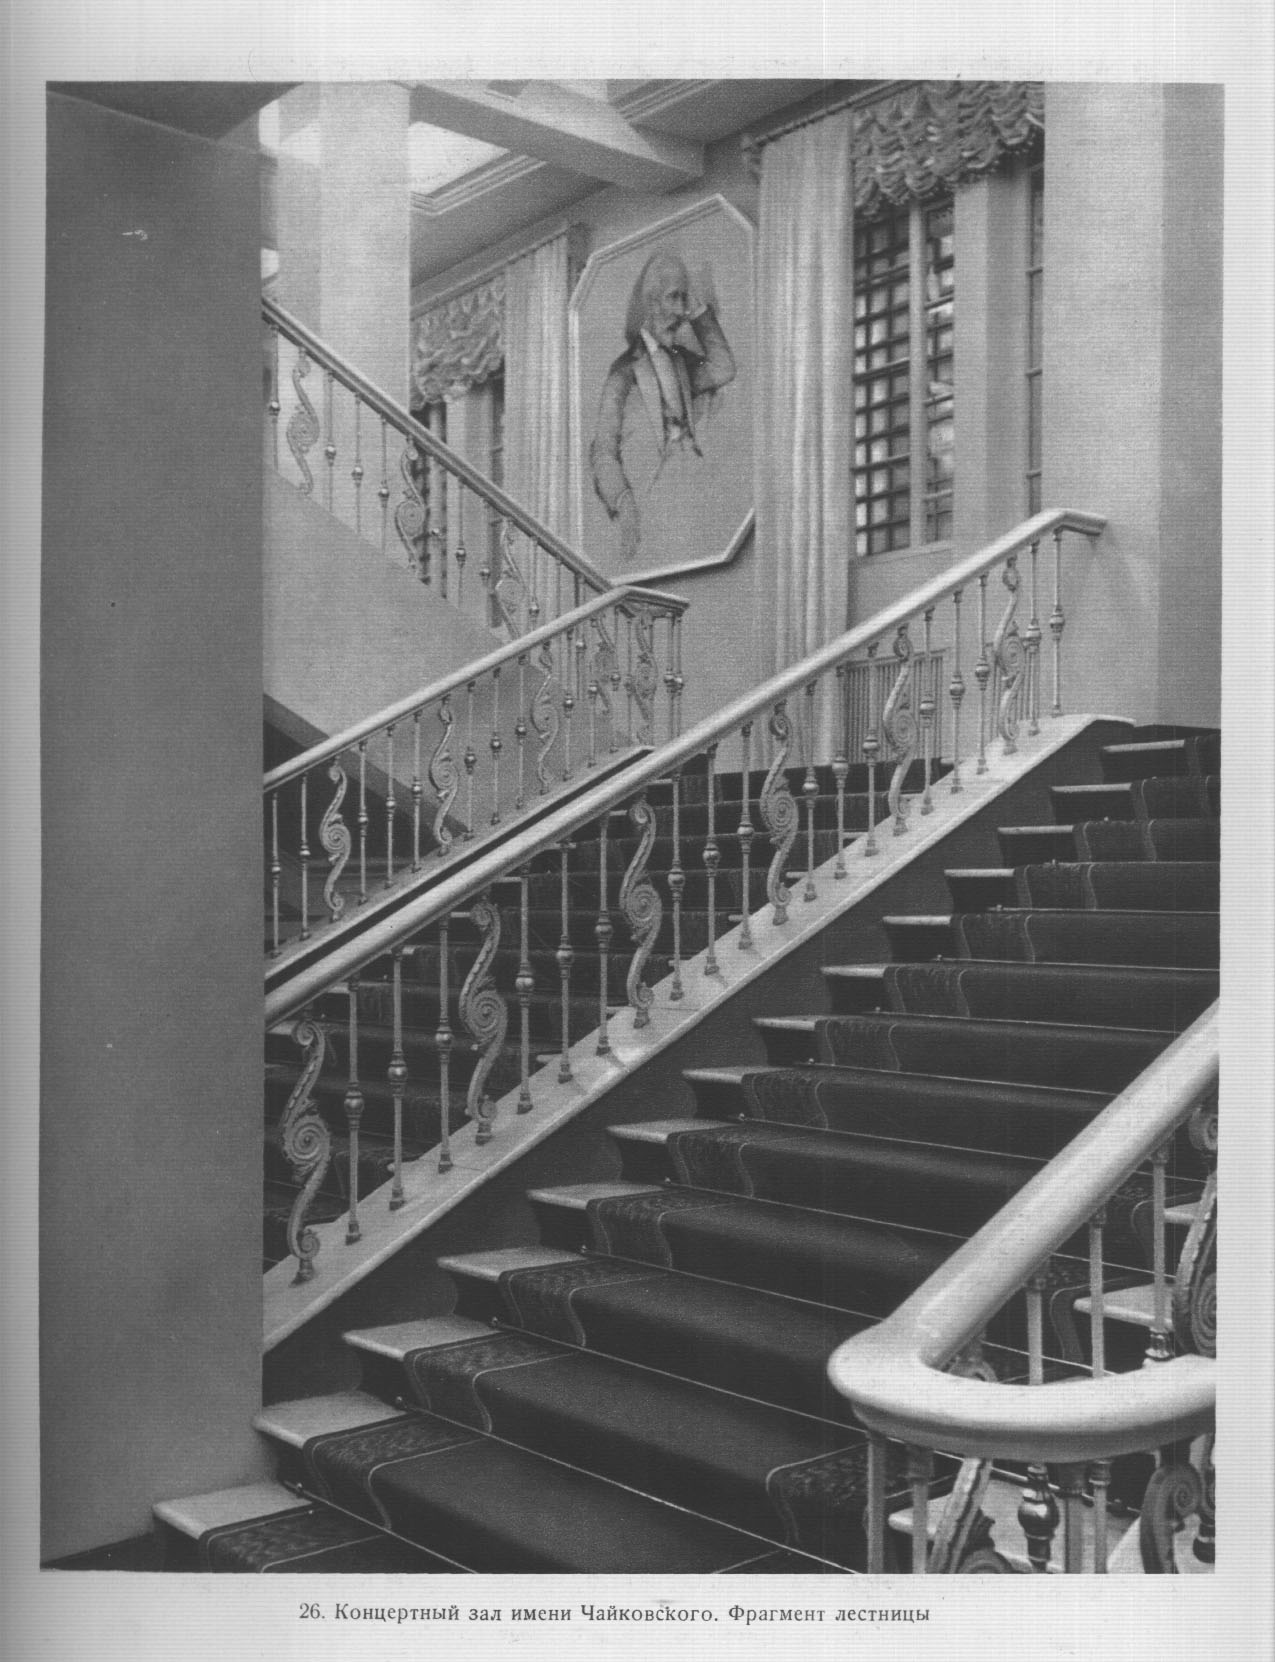 26. Концертный зал имени Чайковского. Фрагмент лестницы